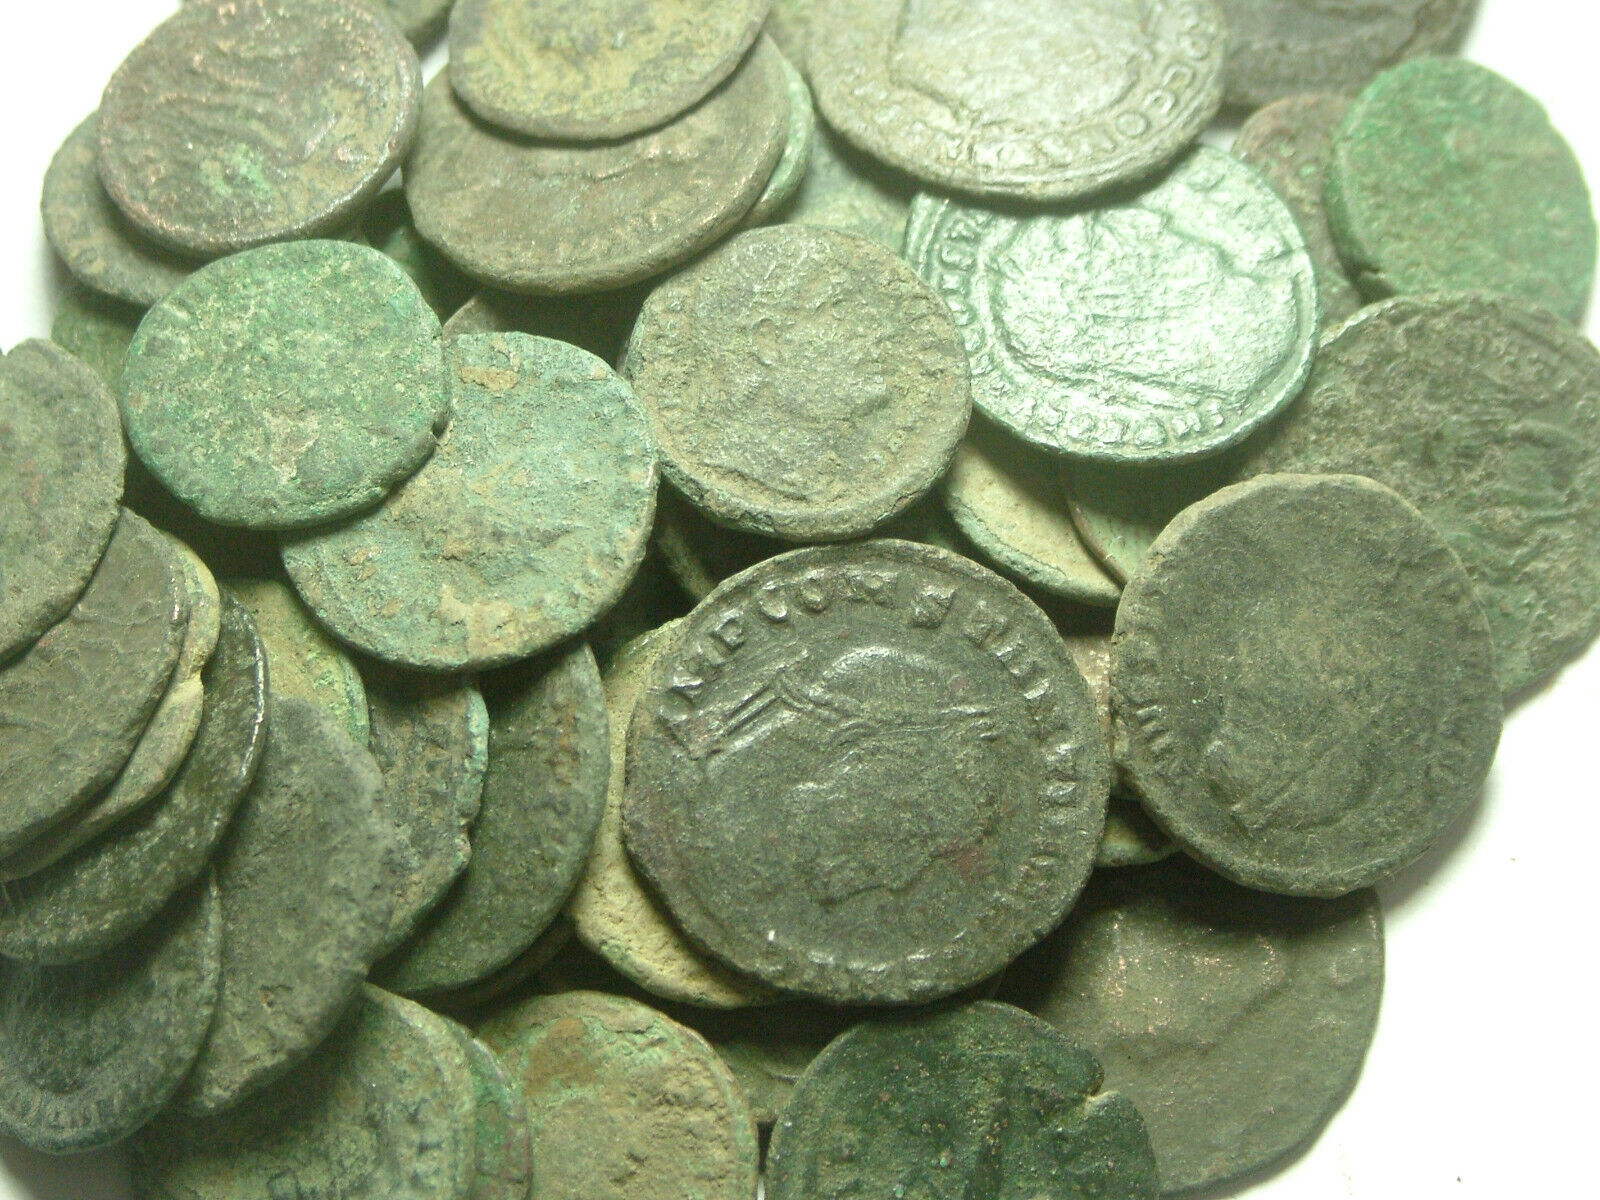 Lot genuine Ancient Roman coins Constantine/Valens/Constantius/Licinius/Claudius Без бренда - фотография #11